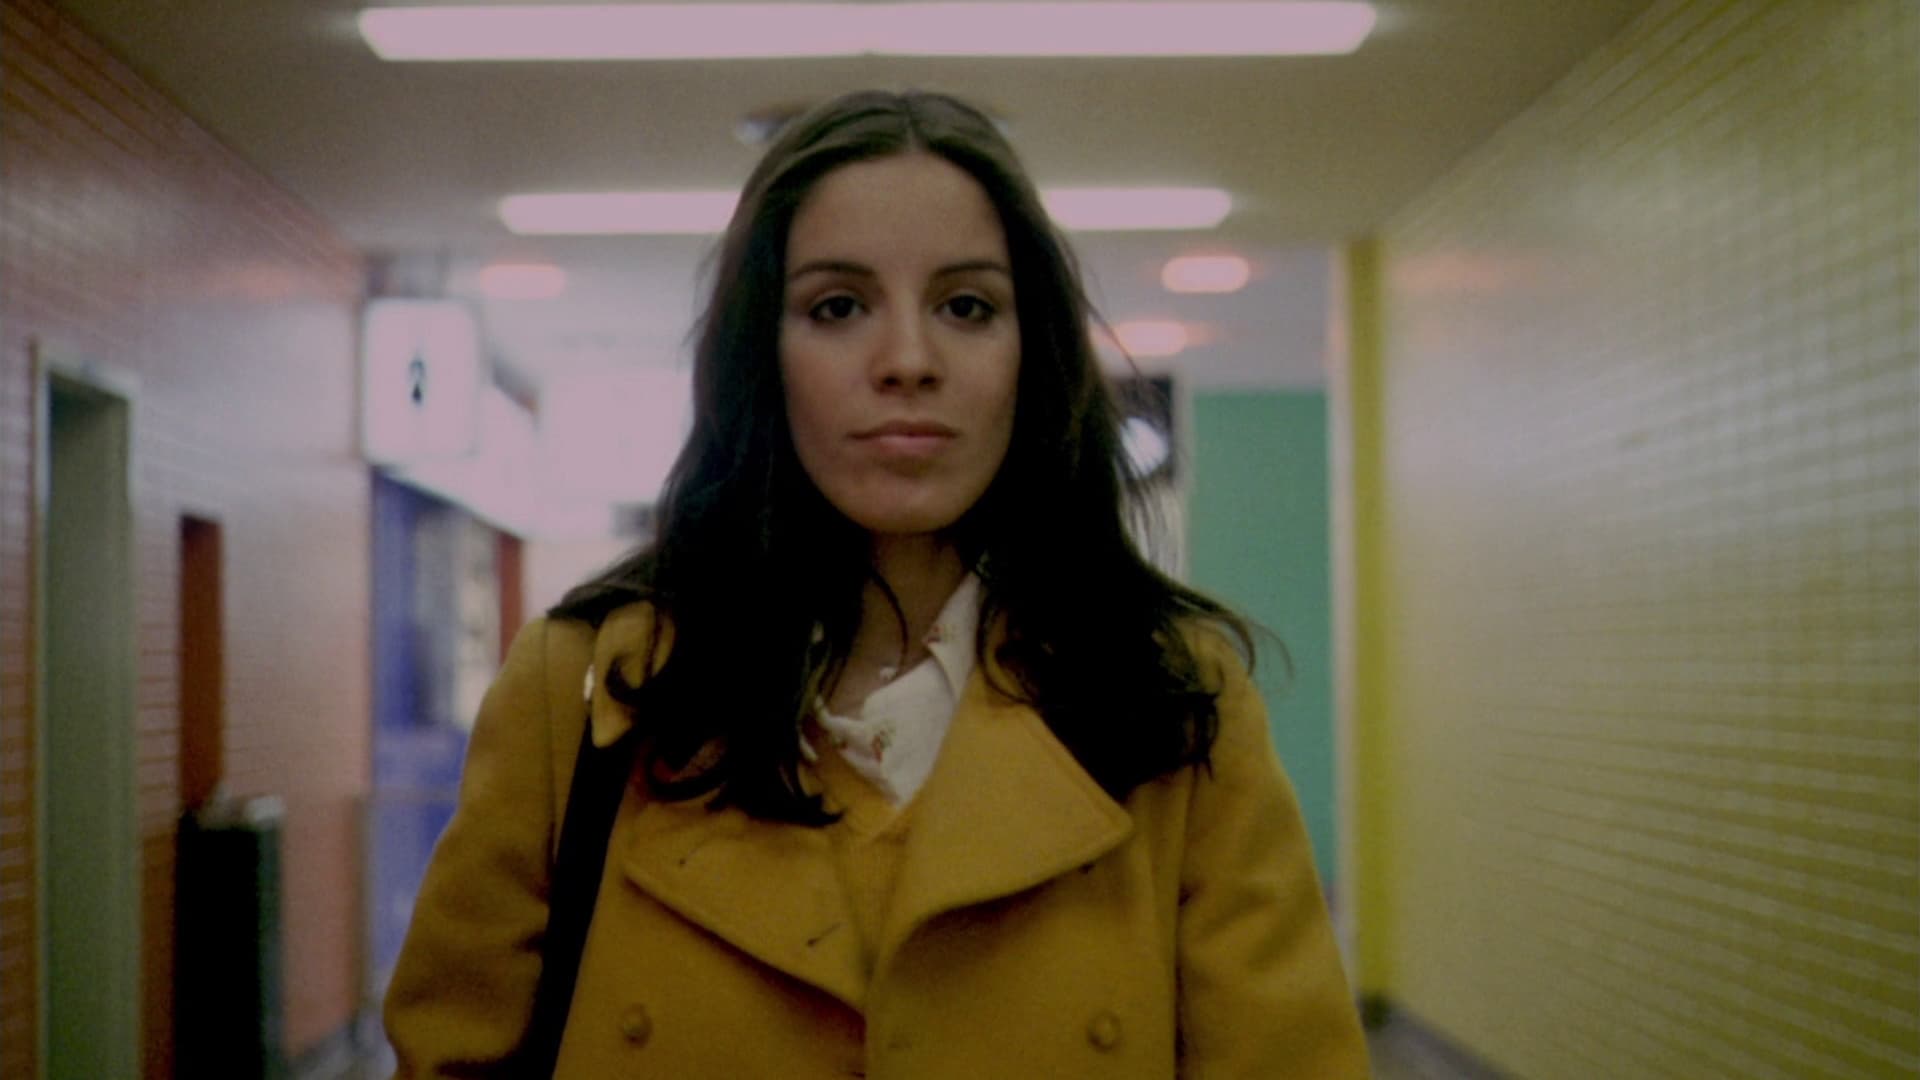 Gina (1975)